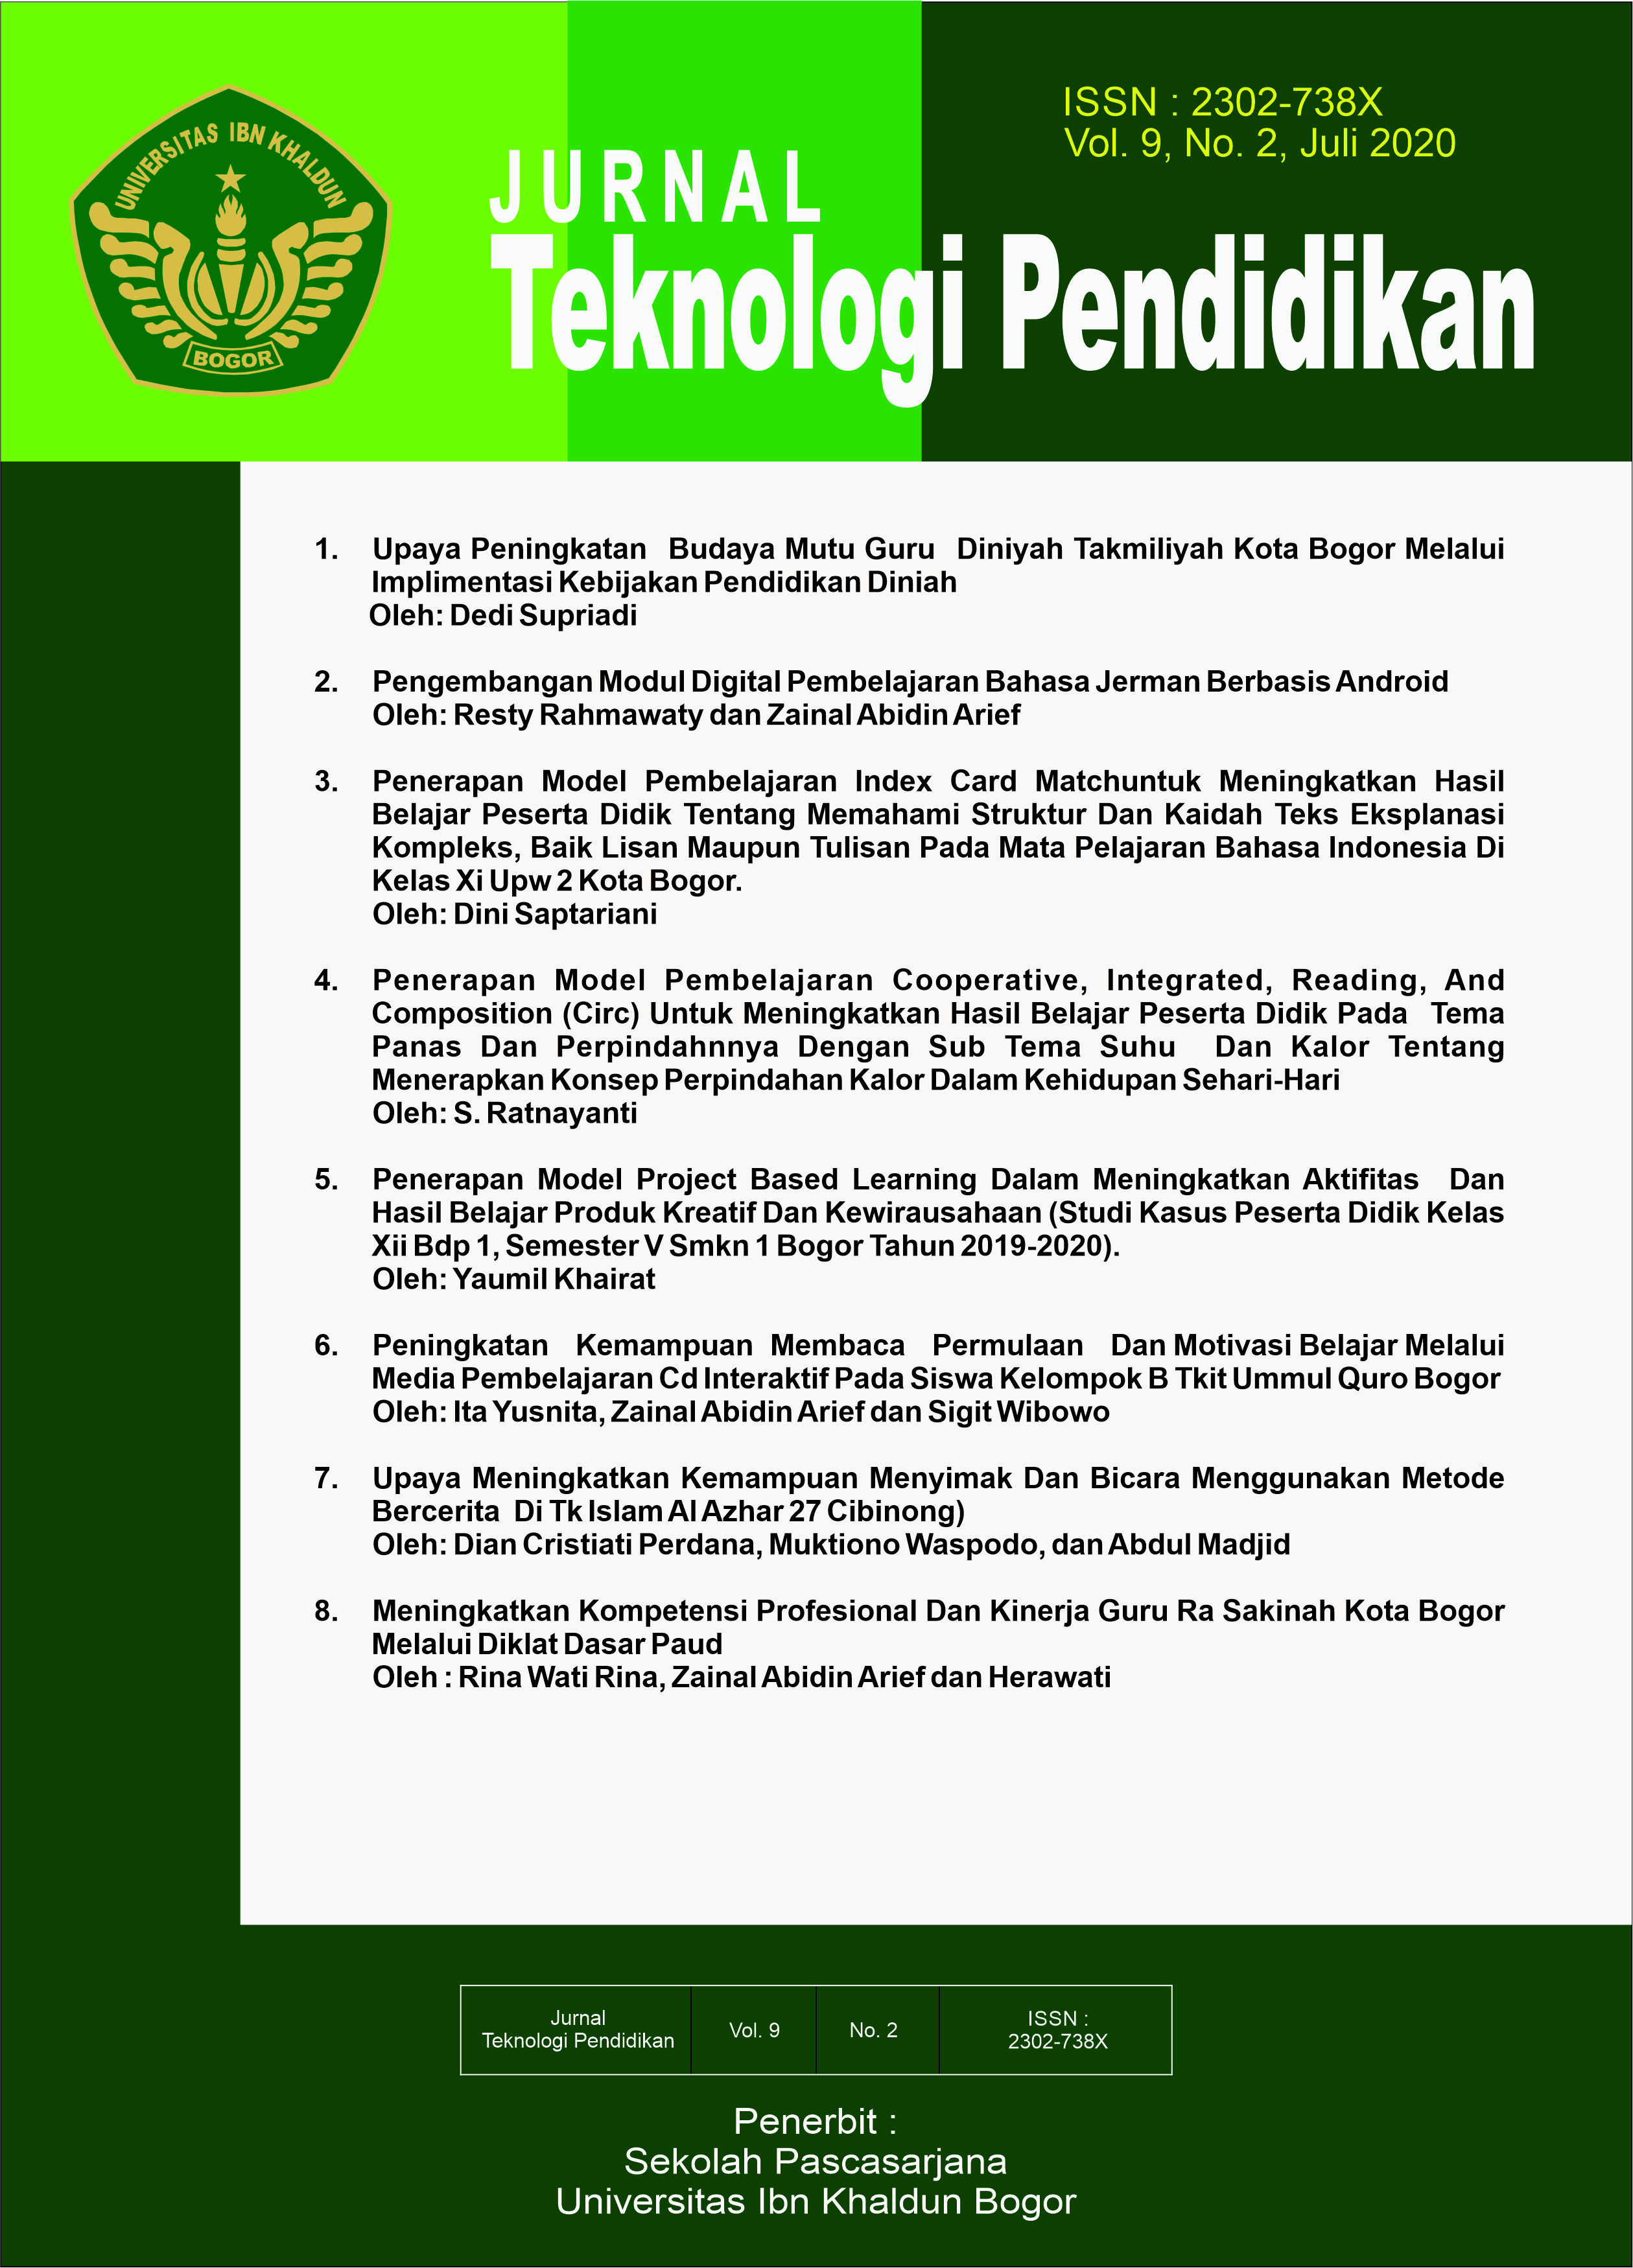 					View Vol. 9 No. 2 (2020): Jurnal Teknologi Pendidikan vol. 9 no. 2
				